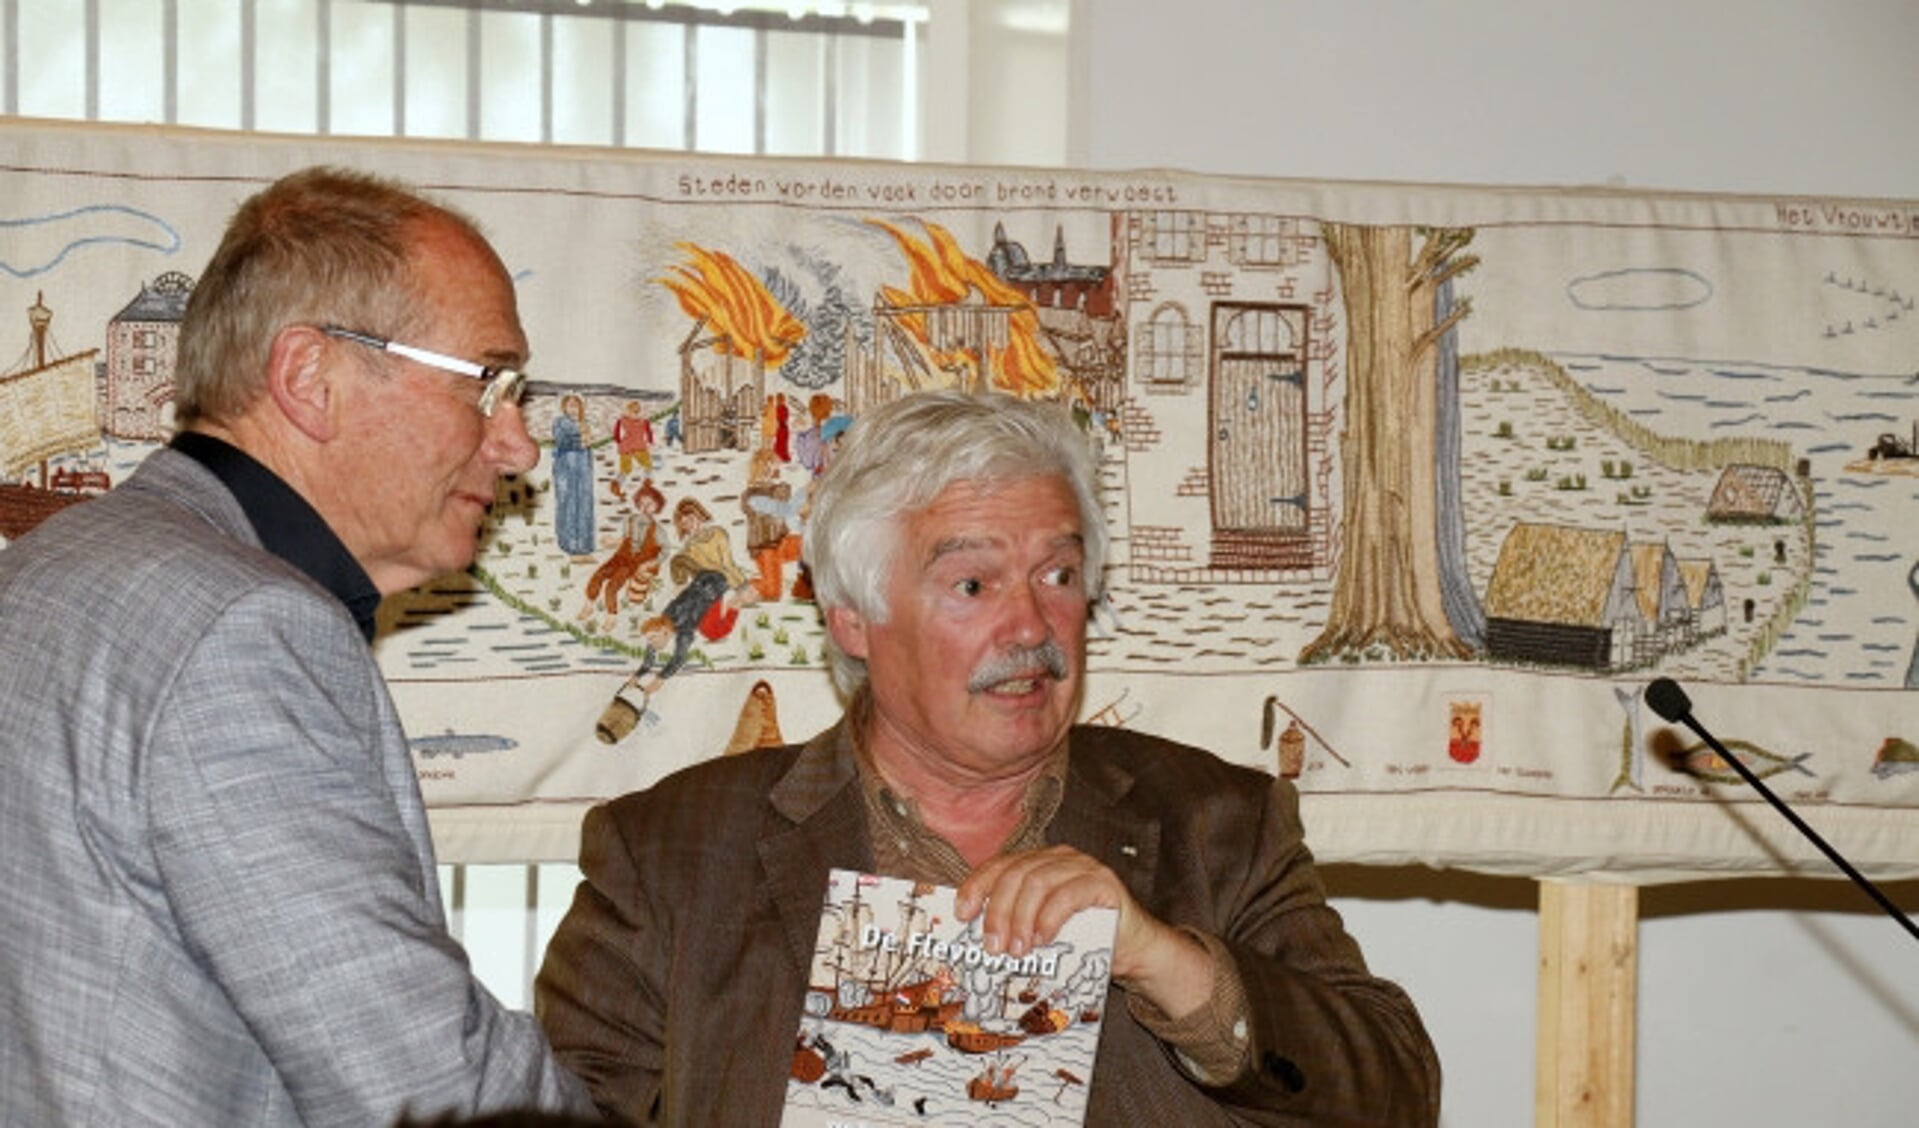  Voorzitter Gert Jan van Tilburg (links) ontvangt een exemplaar van het boek van de uitgever.